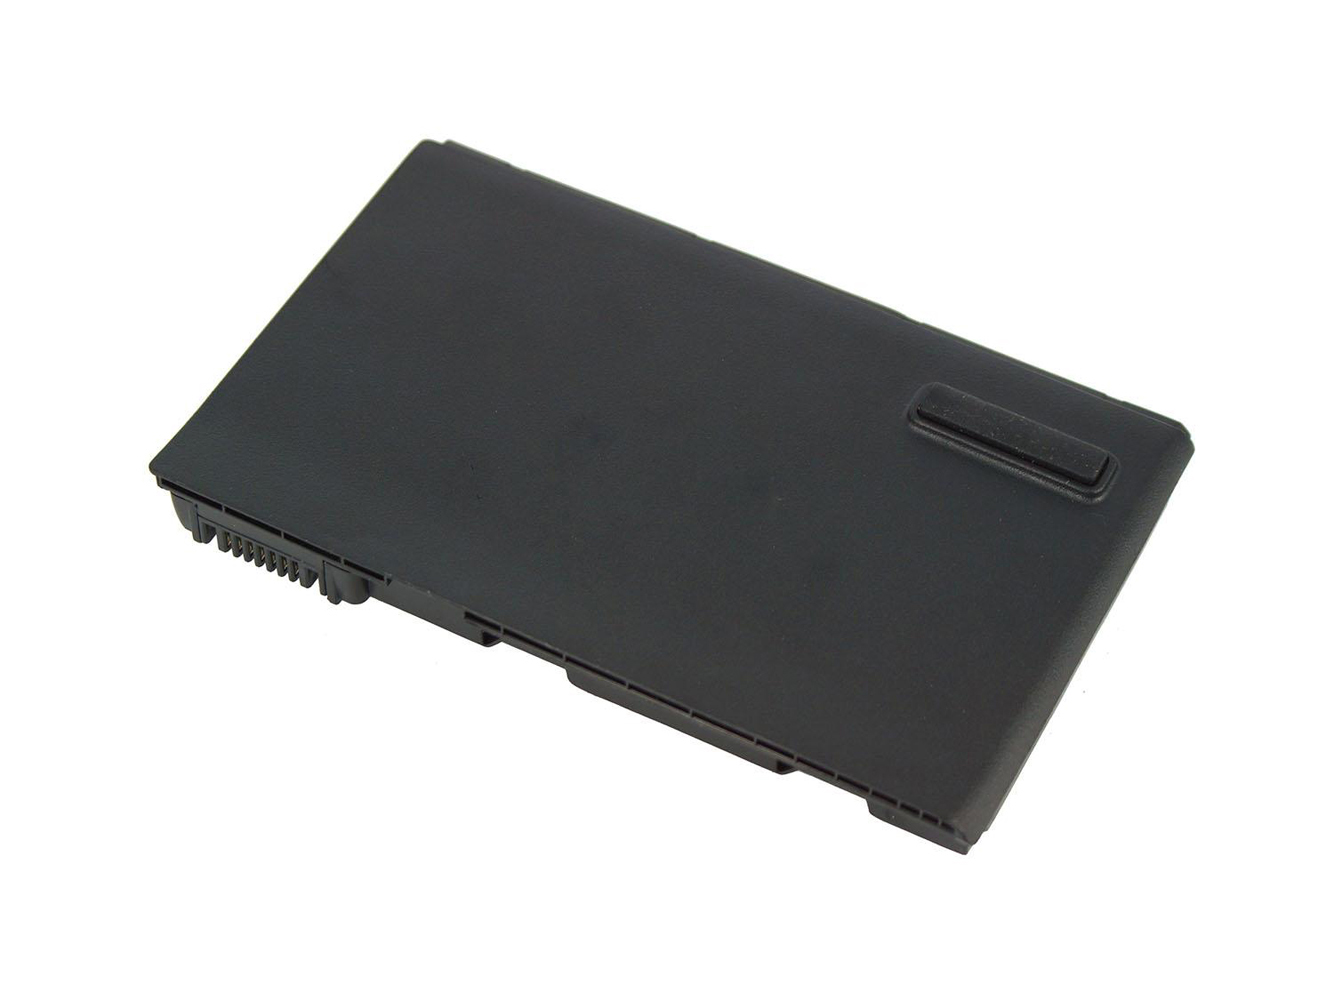 Acer 23.tczv1.004, Ak.008bt.054 Laptop Batteries For Extensa 5210-300508, Extensa 5220-051g08mi replacement